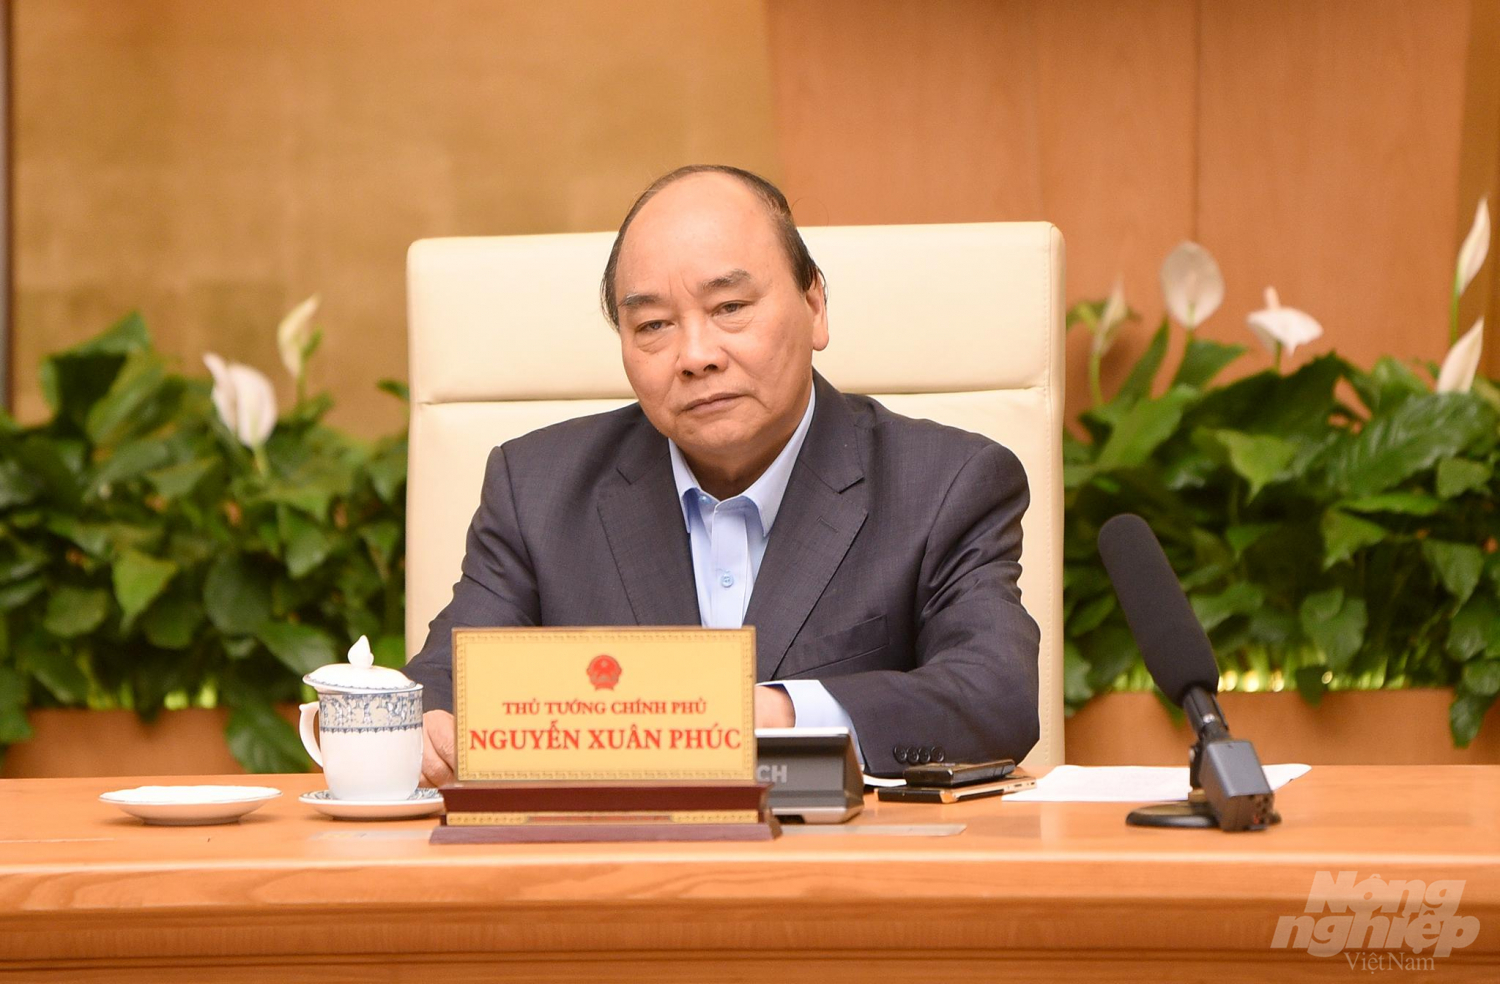 Thủ tướng Nguyễn Xuân Phúc chủ trì Hội nghị trực tuyến “4.0 thúc đẩy phát triển công nghiệp chế biến nông sản, cơ giới hóa nông nghiệp